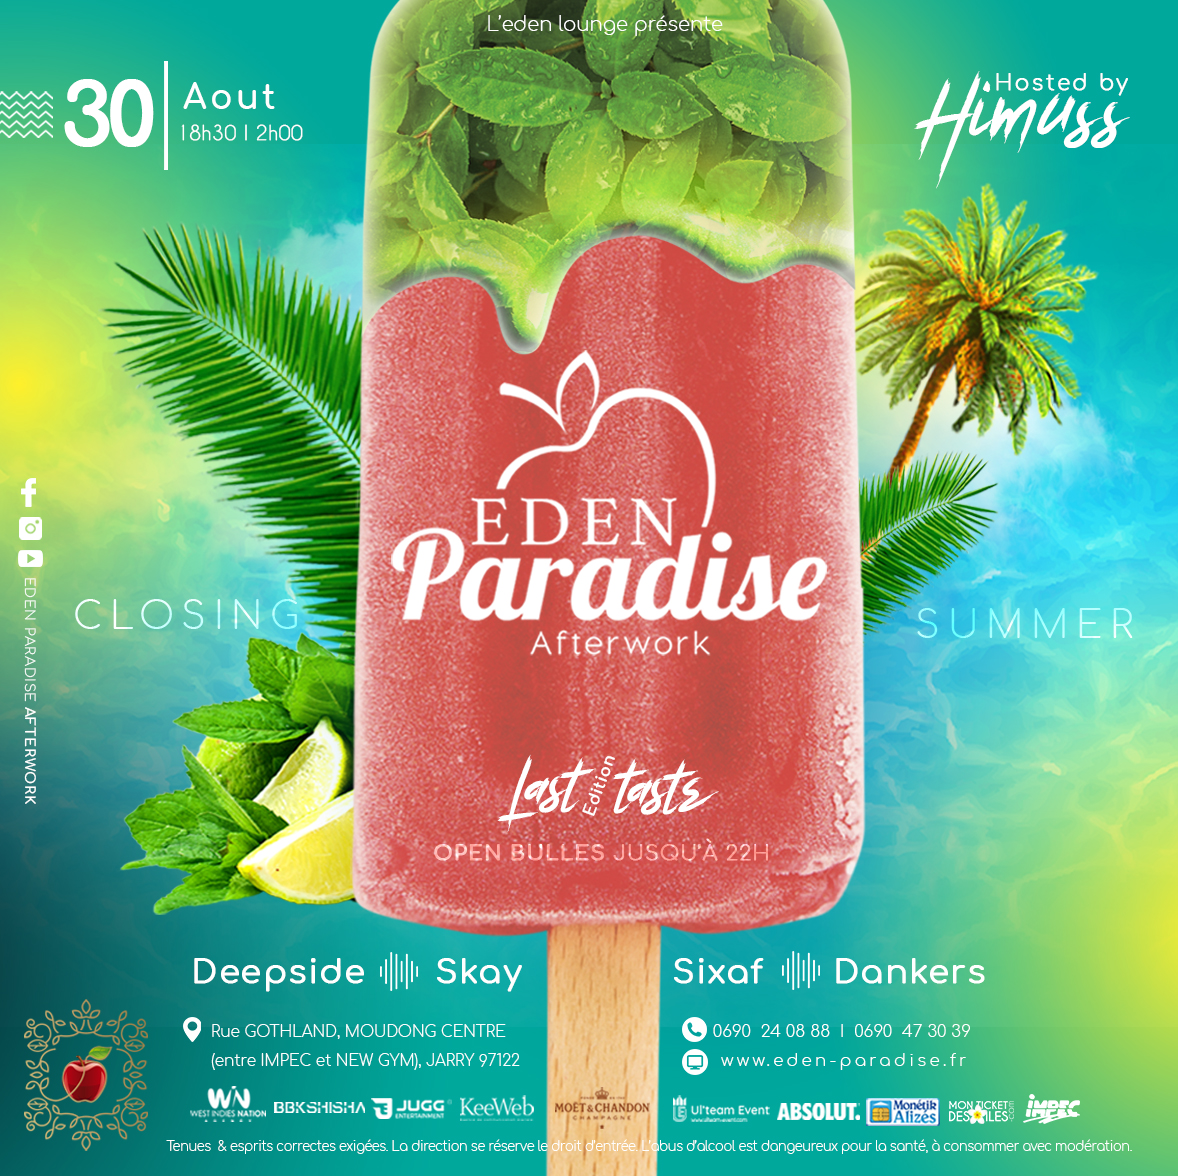 ΣDΣN Paradise ΔfterWΘrk - Last taste